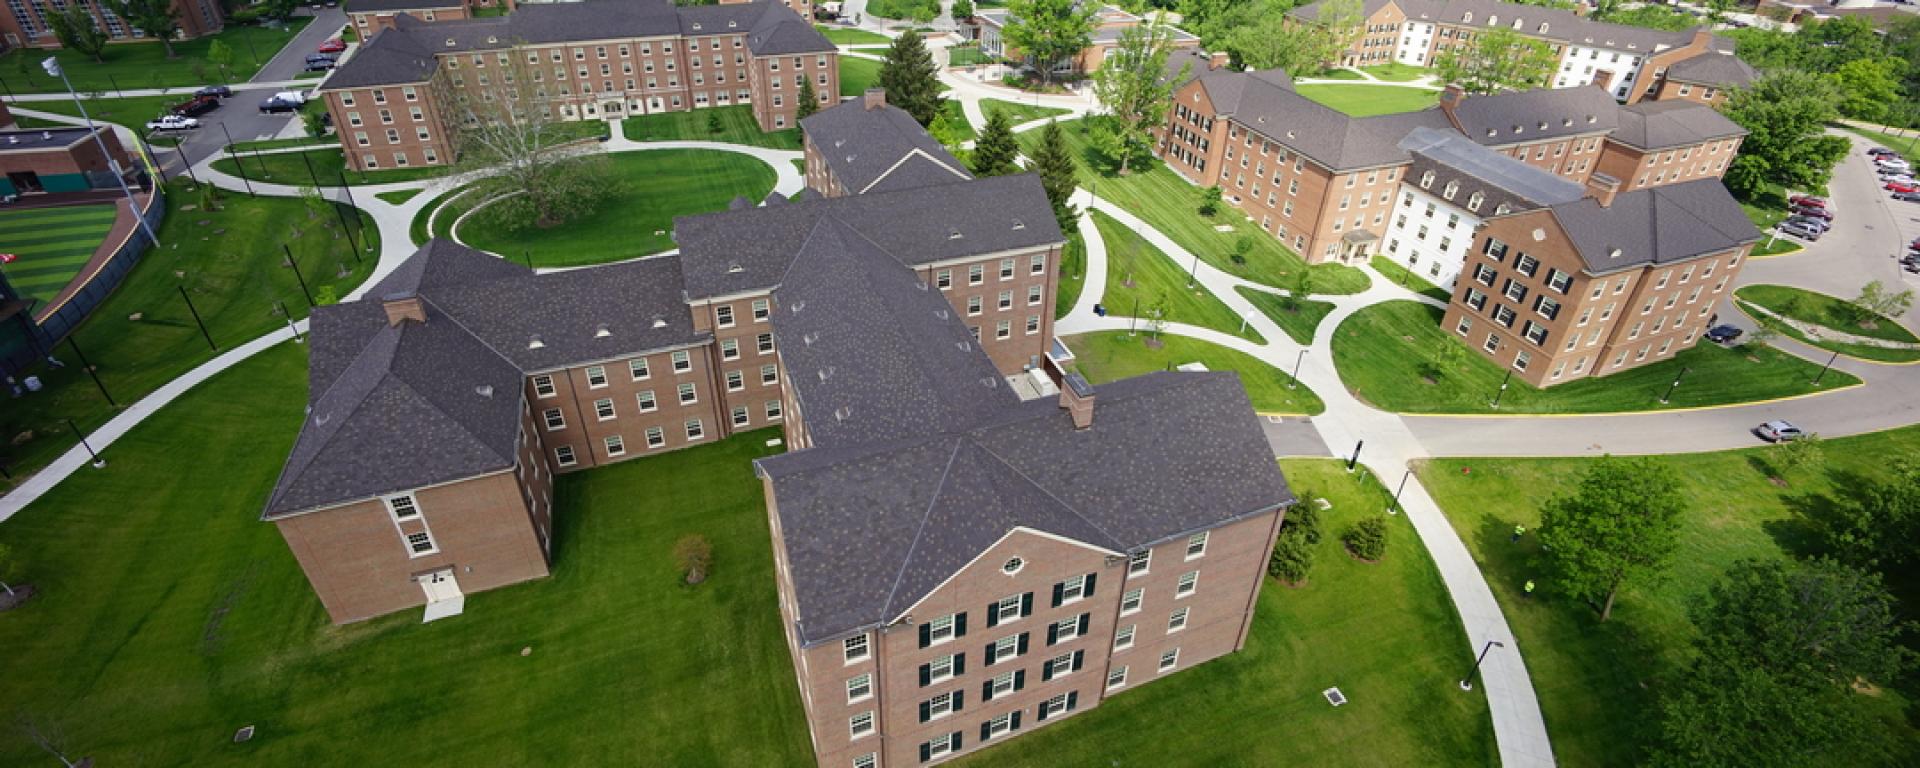 aerial of dorm buildings